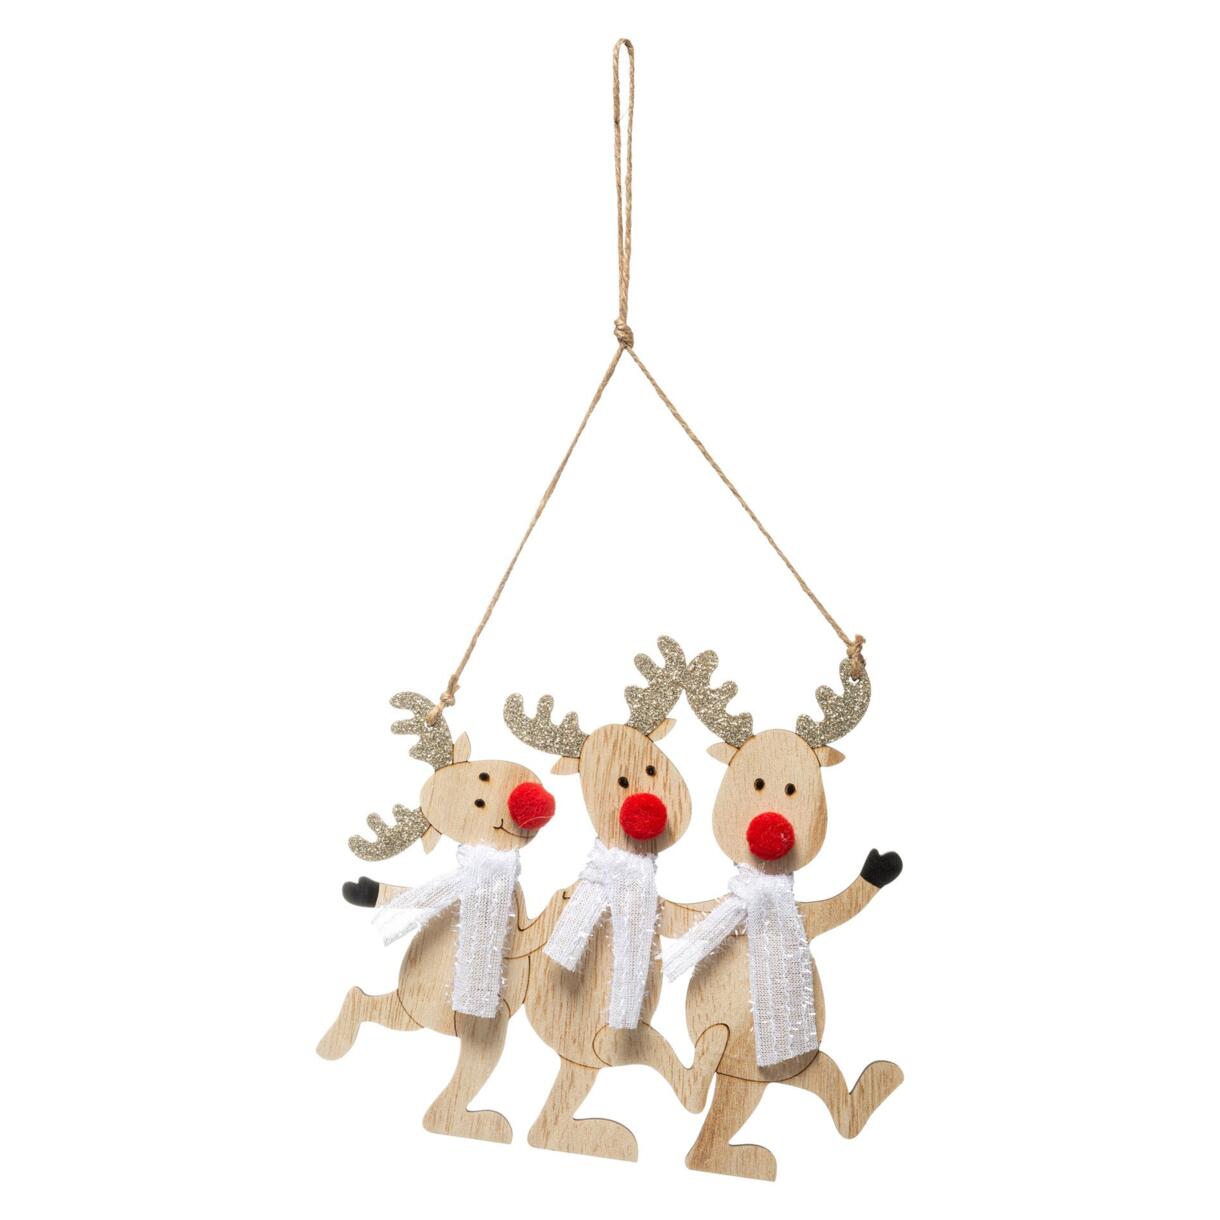 Kersthangdecoratie Rendieren met sjaals van hout naturelkleur 1